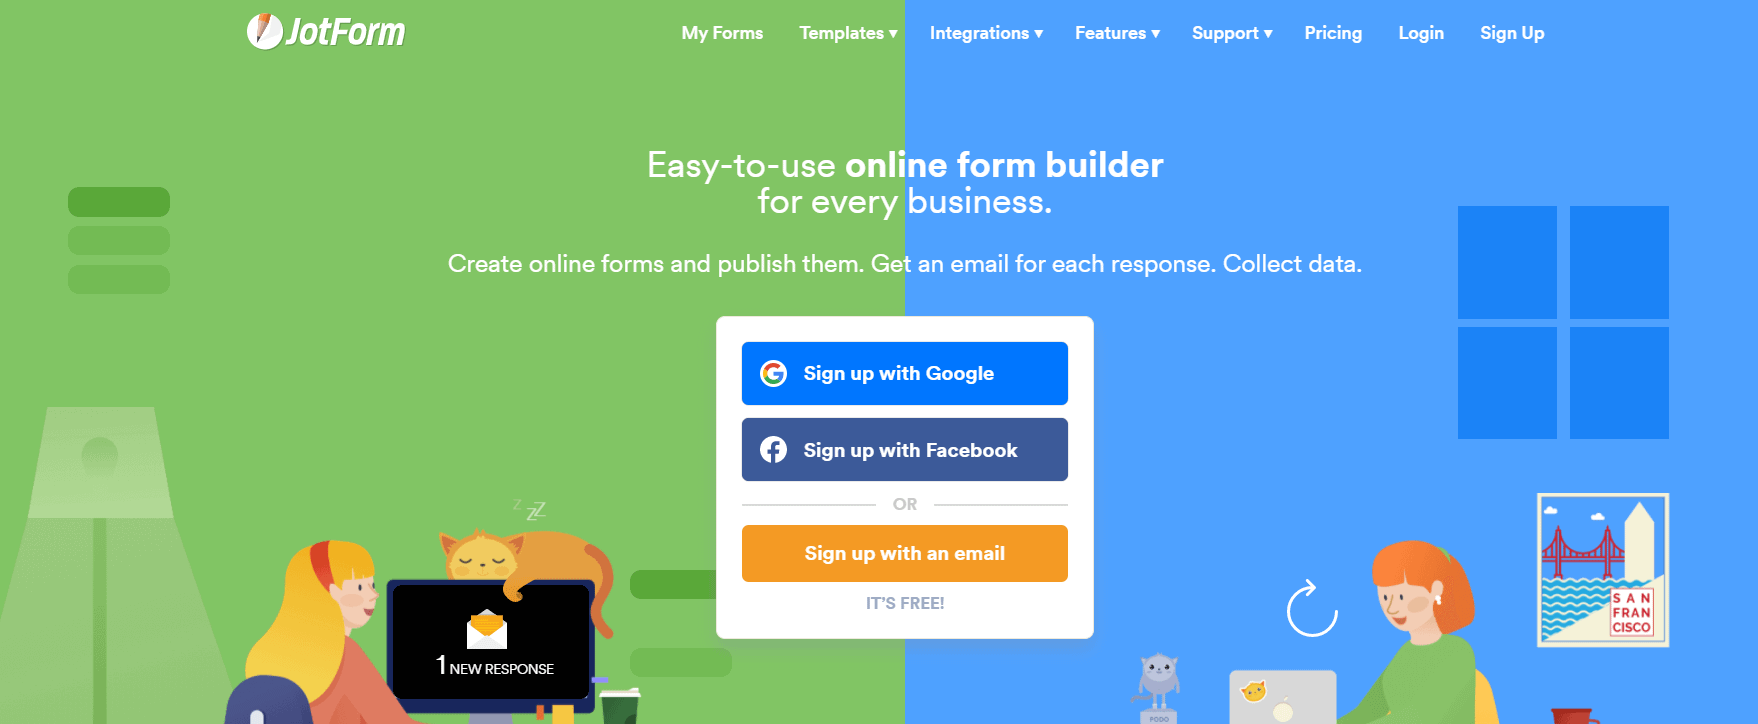 Construtor de formulários online do JotForm.